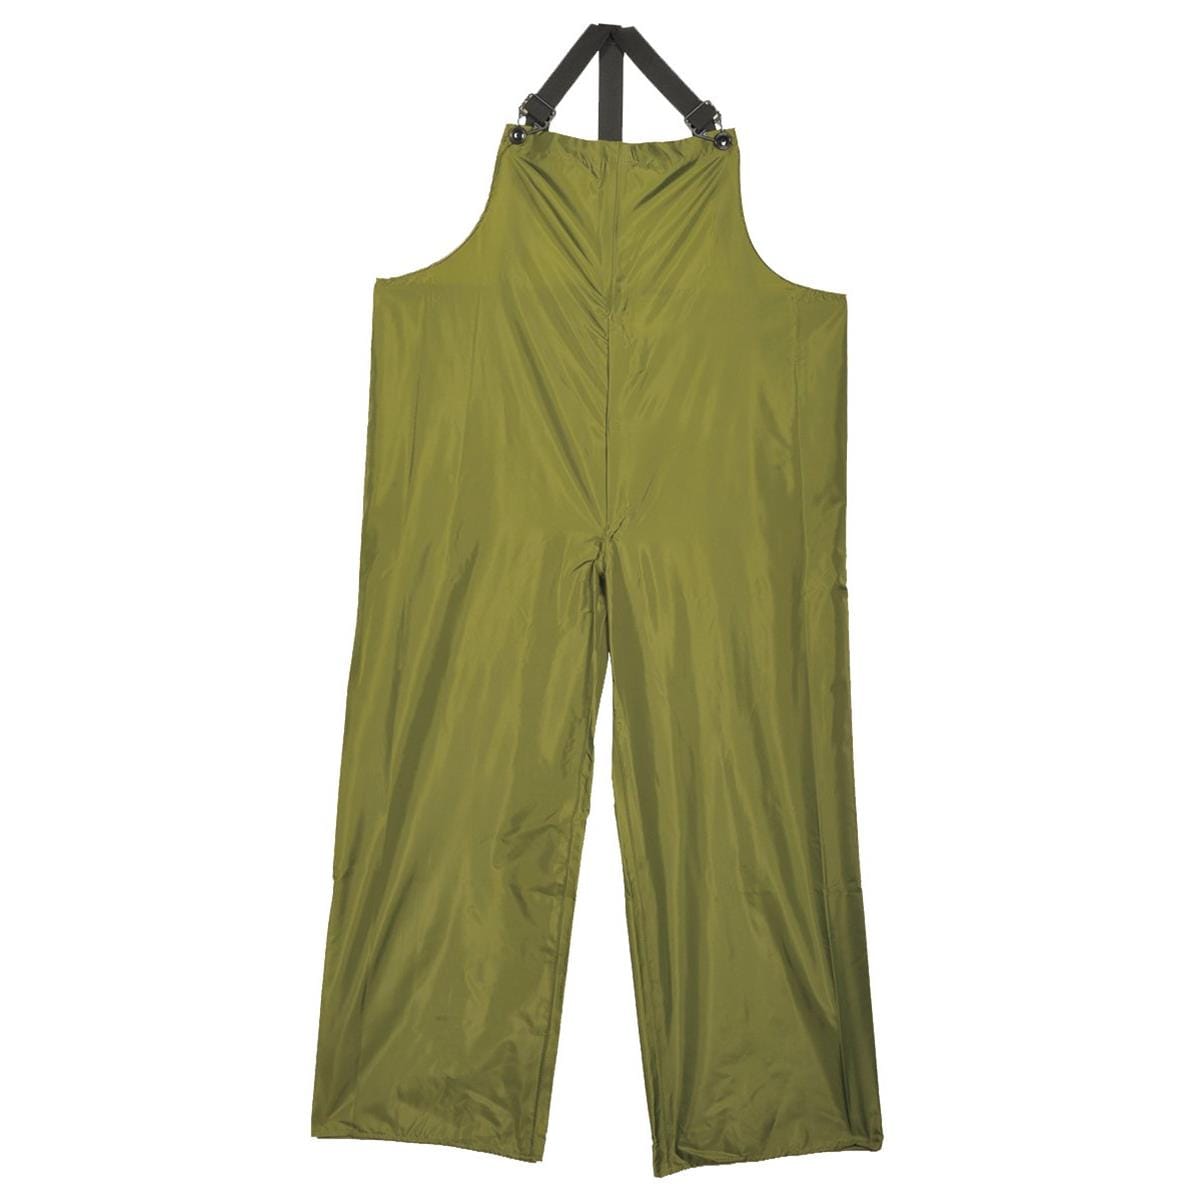 Bib Overalls & Suspenders: Size S, Yellow, PVC & Nylon